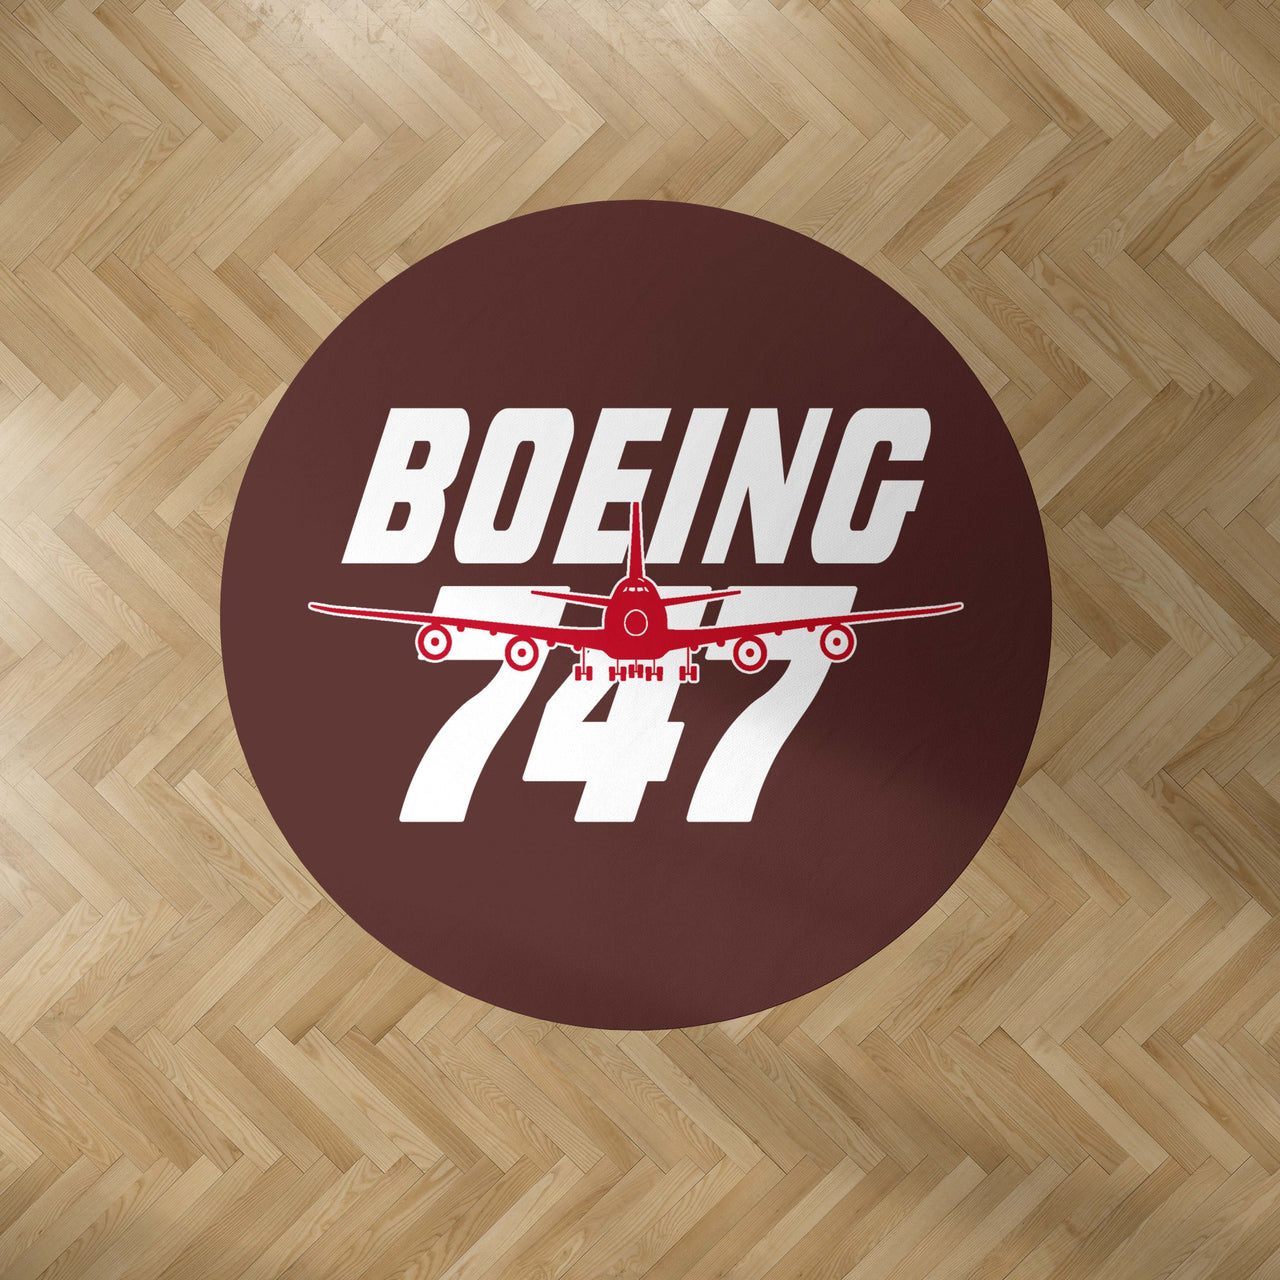 Amazing Boeing 747 Designed Carpet & Floor Mats (Round)